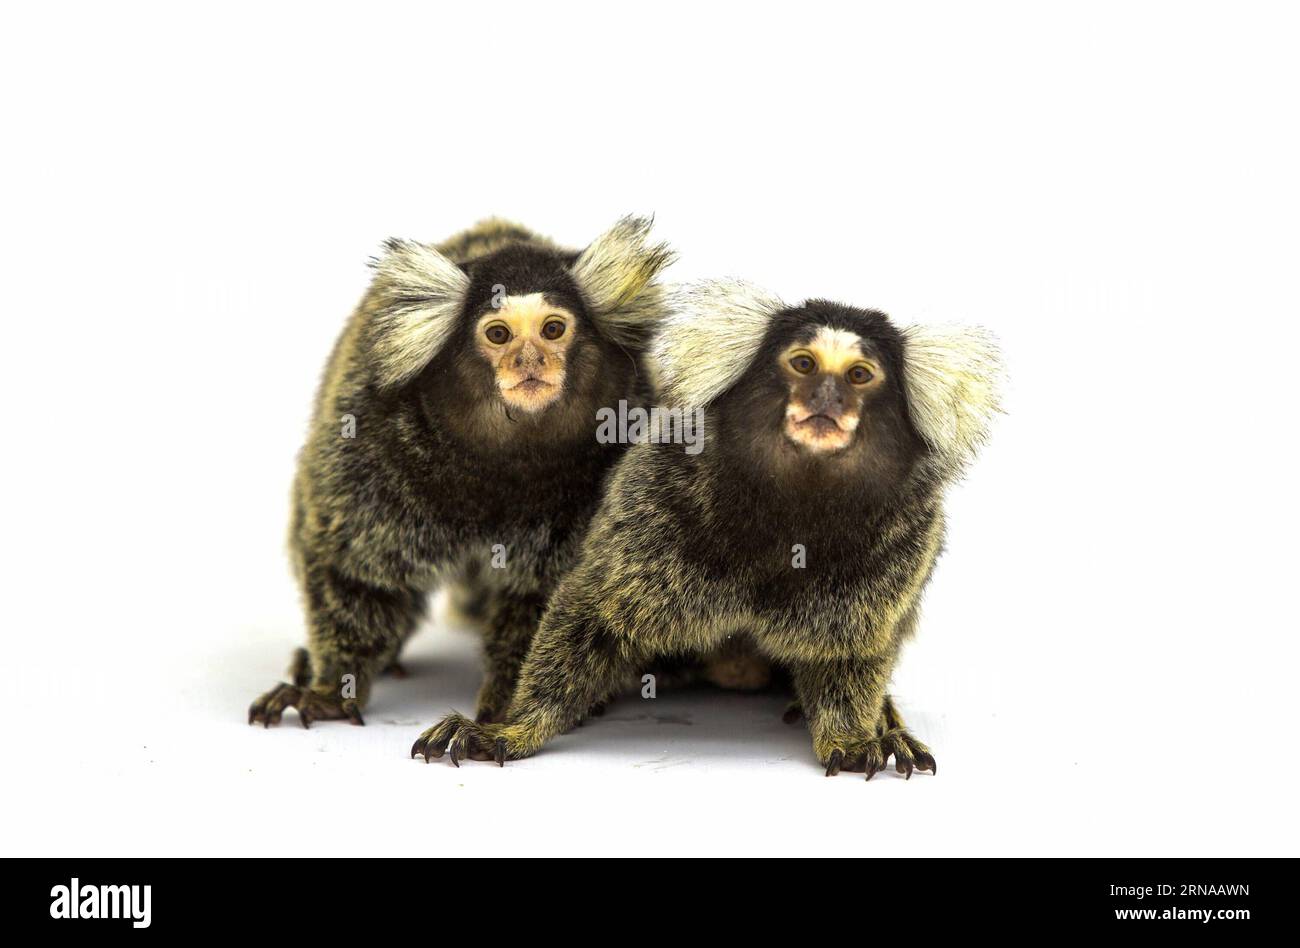 La photo prise le 23 décembre 2015 montre deux marmousets au Chimelong Safari Park à Guangzhou, capitale de la province du Guangdong du sud de la Chine. Plus de 60 types de primates peuvent être trouvés au Chimelong Safari Park.) (lfj) CHINA-GUANGDONG-CHIMELONG SAFARI PARK-SINGES (CN) LiuxDawei PUBLICATIONxNOTxINxCHN la photo prise LE 23 2015 décembre montre deux marmousets AU Chimelong Safari Park à Guangzhou capitale du sud de la Chine S Guangdong province plus de 60 types de primates PEUVENT être trouvés AU Chimelong Safari Park lfj Chine Guangdong Chimelong Safari Park Monkeys CN LiuxDawei PUBLICATIONxNOTxINxCHN Banque D'Images